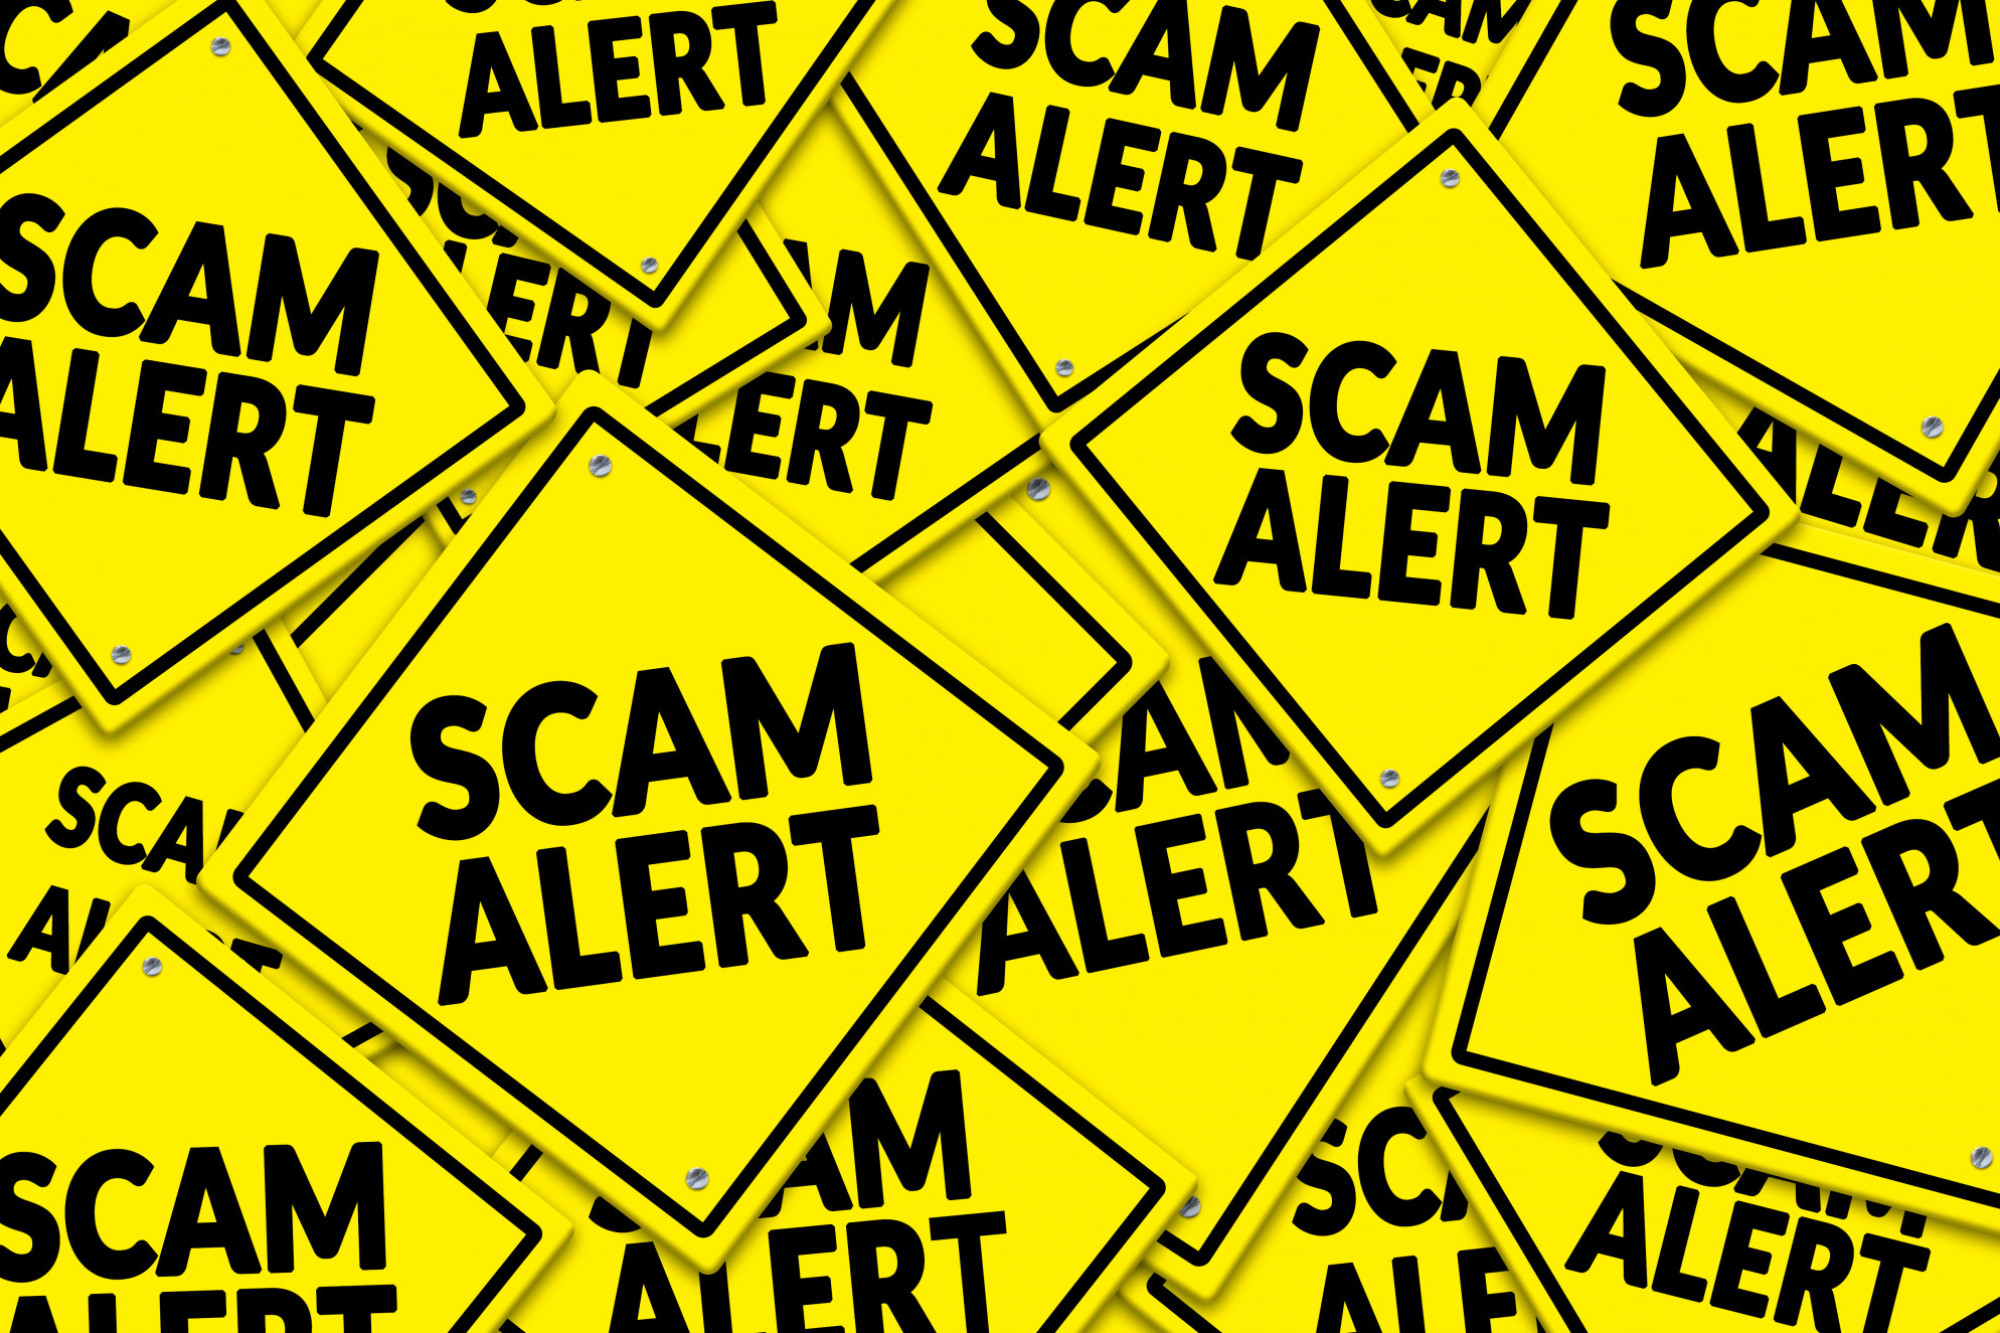 Beware of scam emails